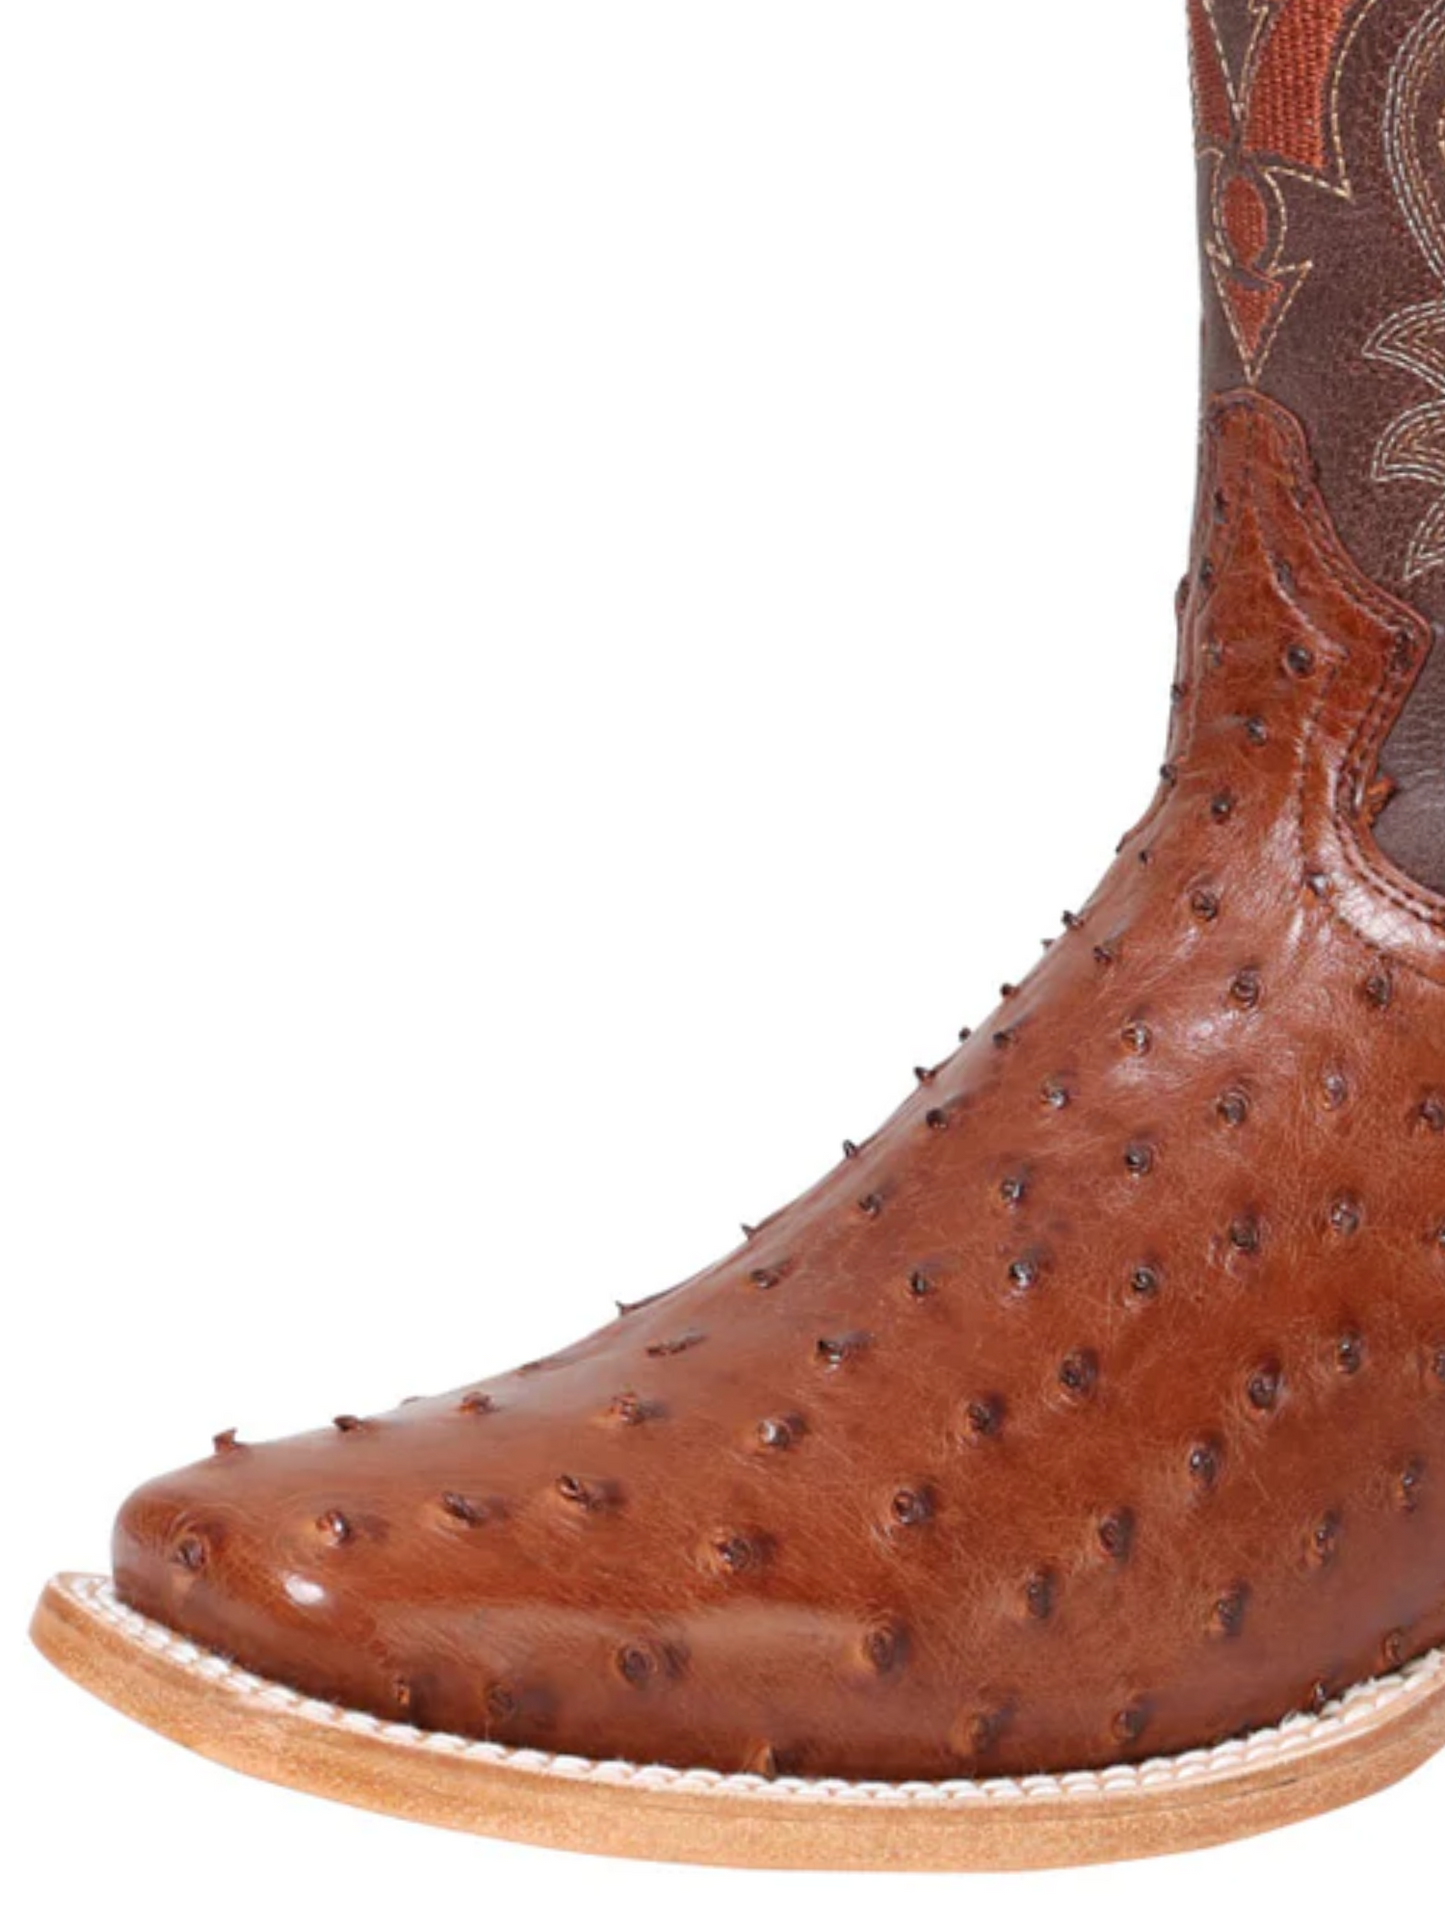 Botas Vaqueras Rodeo Exoticas de Avestruz Original para Hombre '100 Años' - ID: 42770 Cowboy Boots 100 Años 